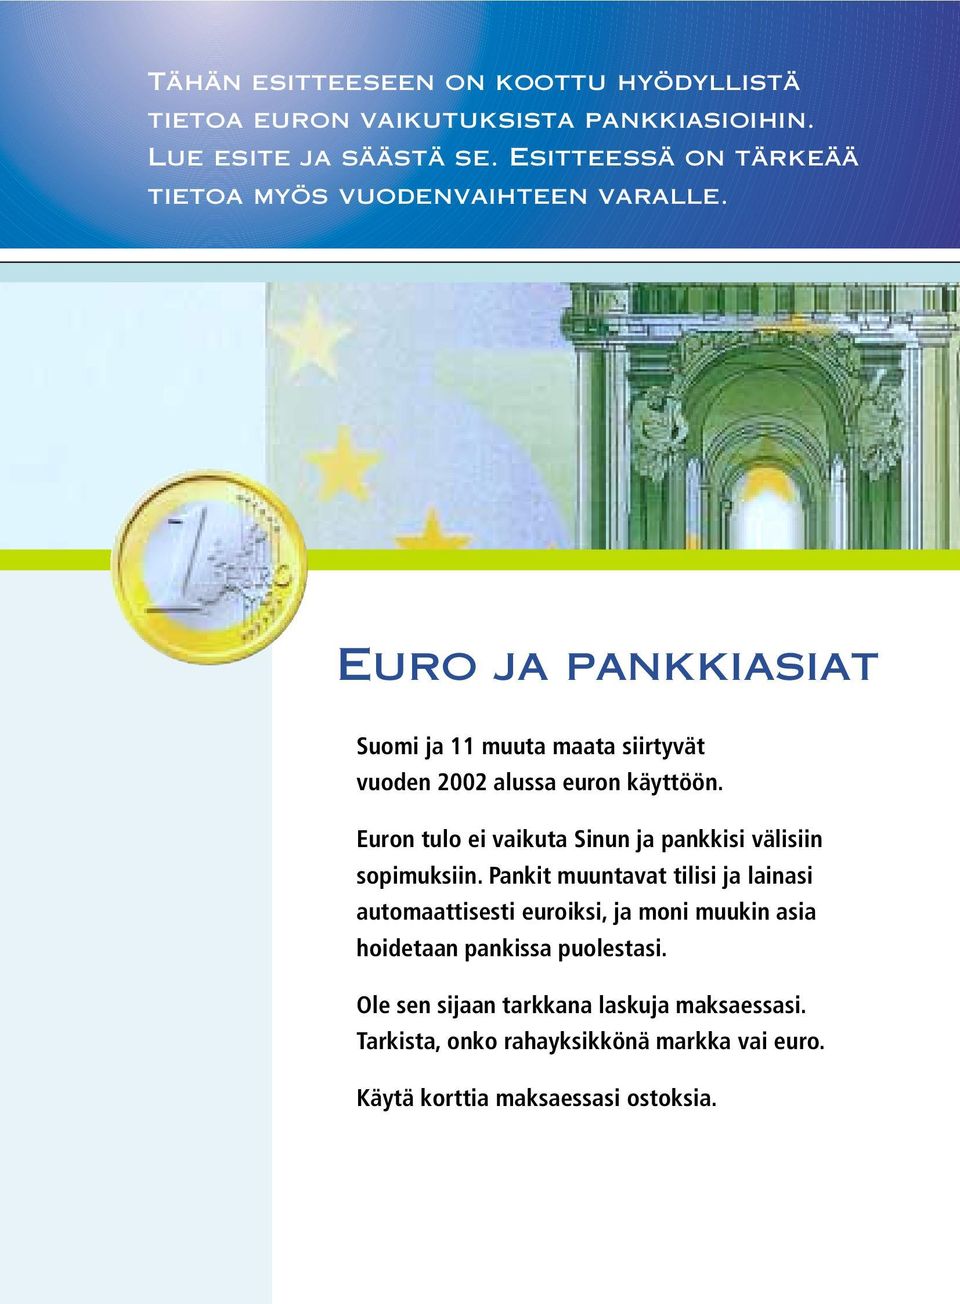 Euro ja pankkiasiat Suomi ja 11 muuta maata siirtyvät vuoden 2002 alussa euron käyttöön.